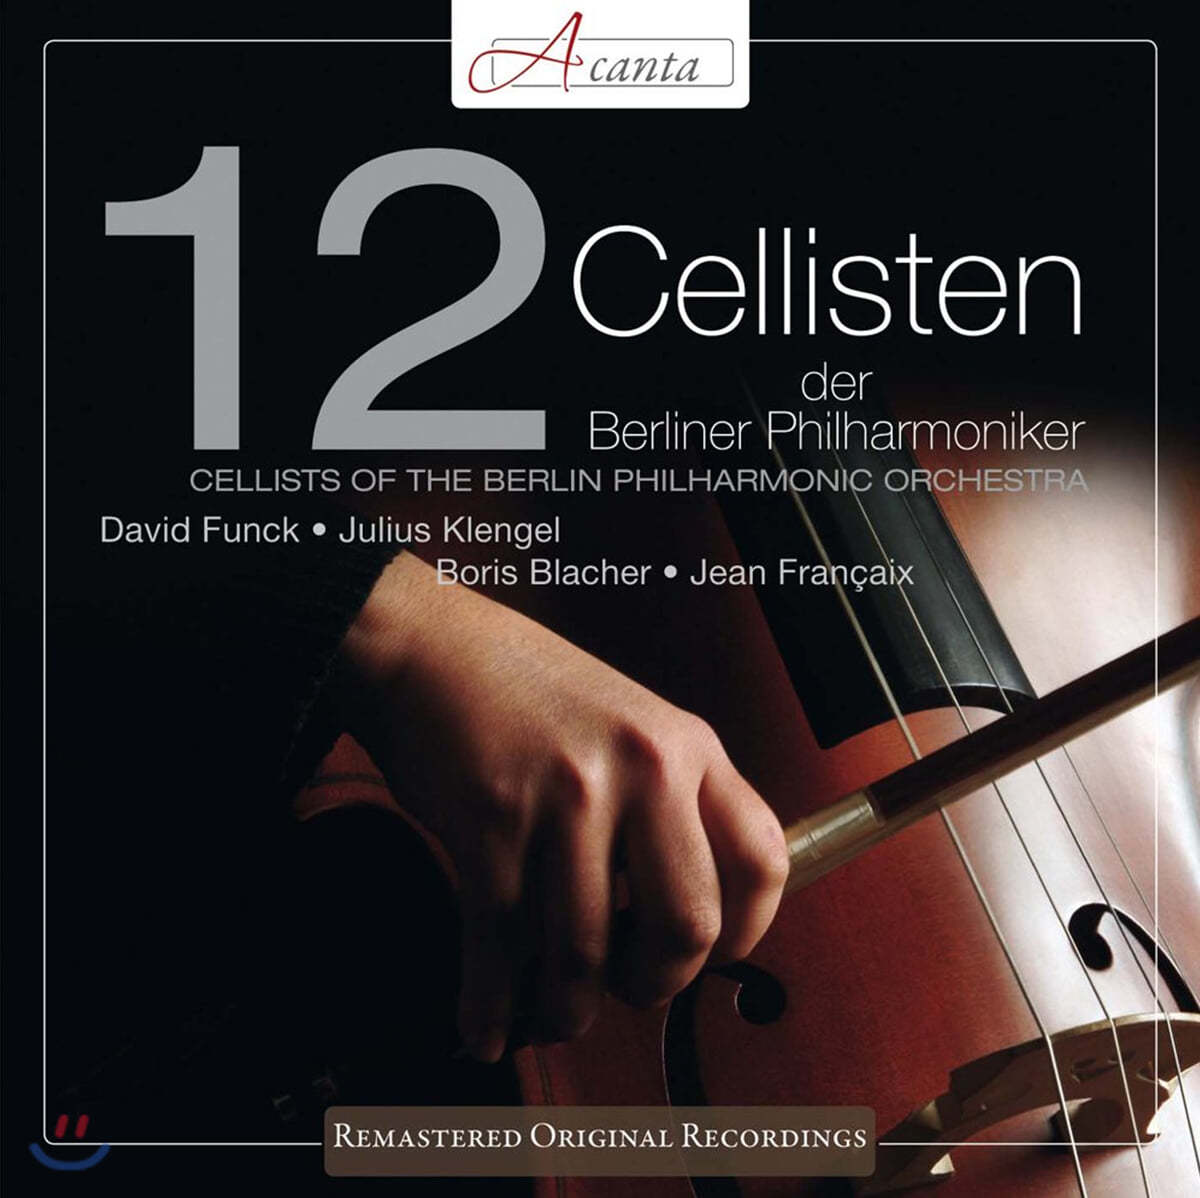 베를린필 12 첼리스트 (12 Cellisten der Berliner Philharmoniker: Cellists Of The Berlin Philharmonic Orchestra) 